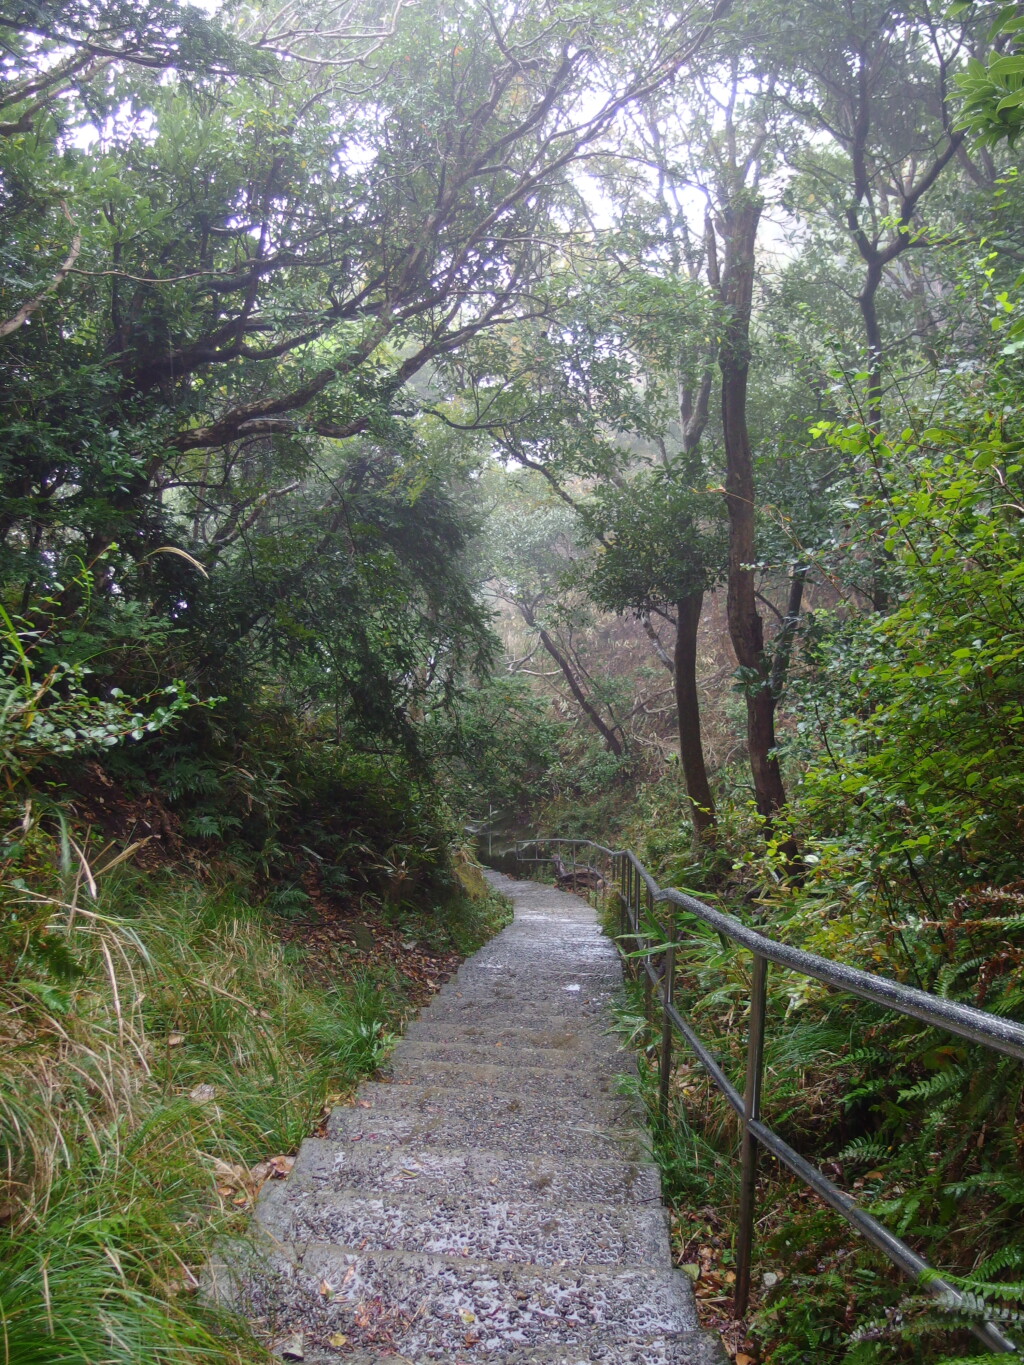 11月上旬雨の鋸山日本寺山頂から地獄のぞきを経て羅漢エリアへと下りはじめる